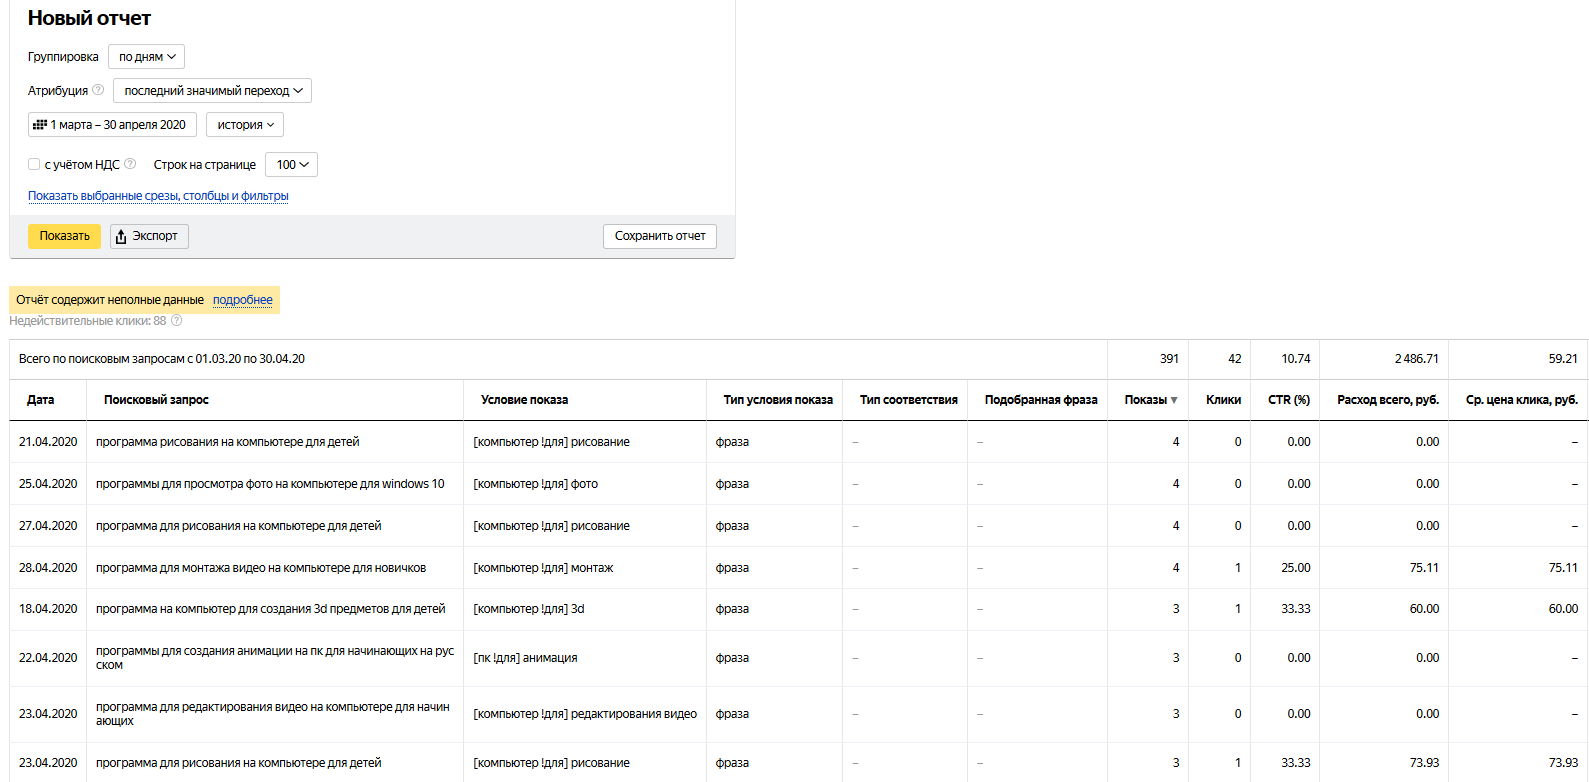 Как упростить работу с отчетом «Поисковые запросы» в Яндекс.Директе - «Заработок»